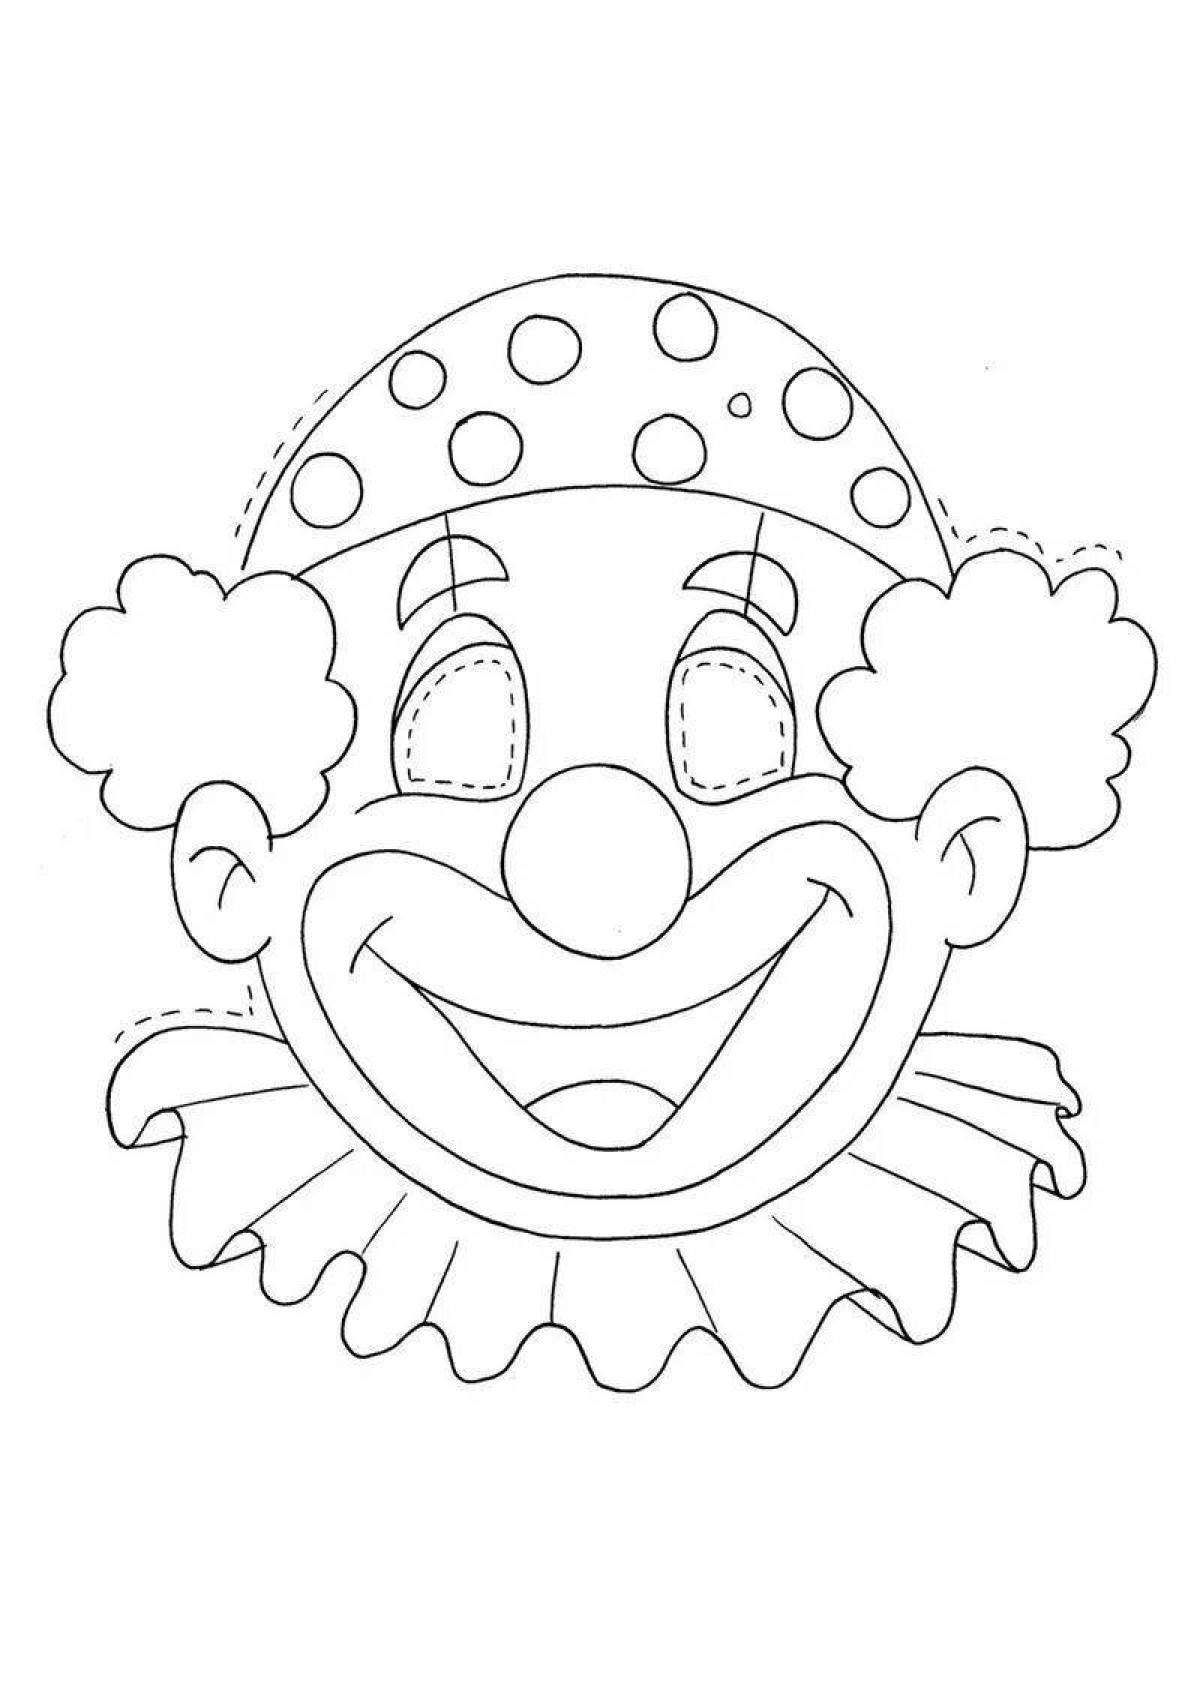 Шаблон клоуна для аппликации для детей. Клоун раскраска. Клоун шаблон. Лицо клоуна раскраска. Маски клоуна для детей.